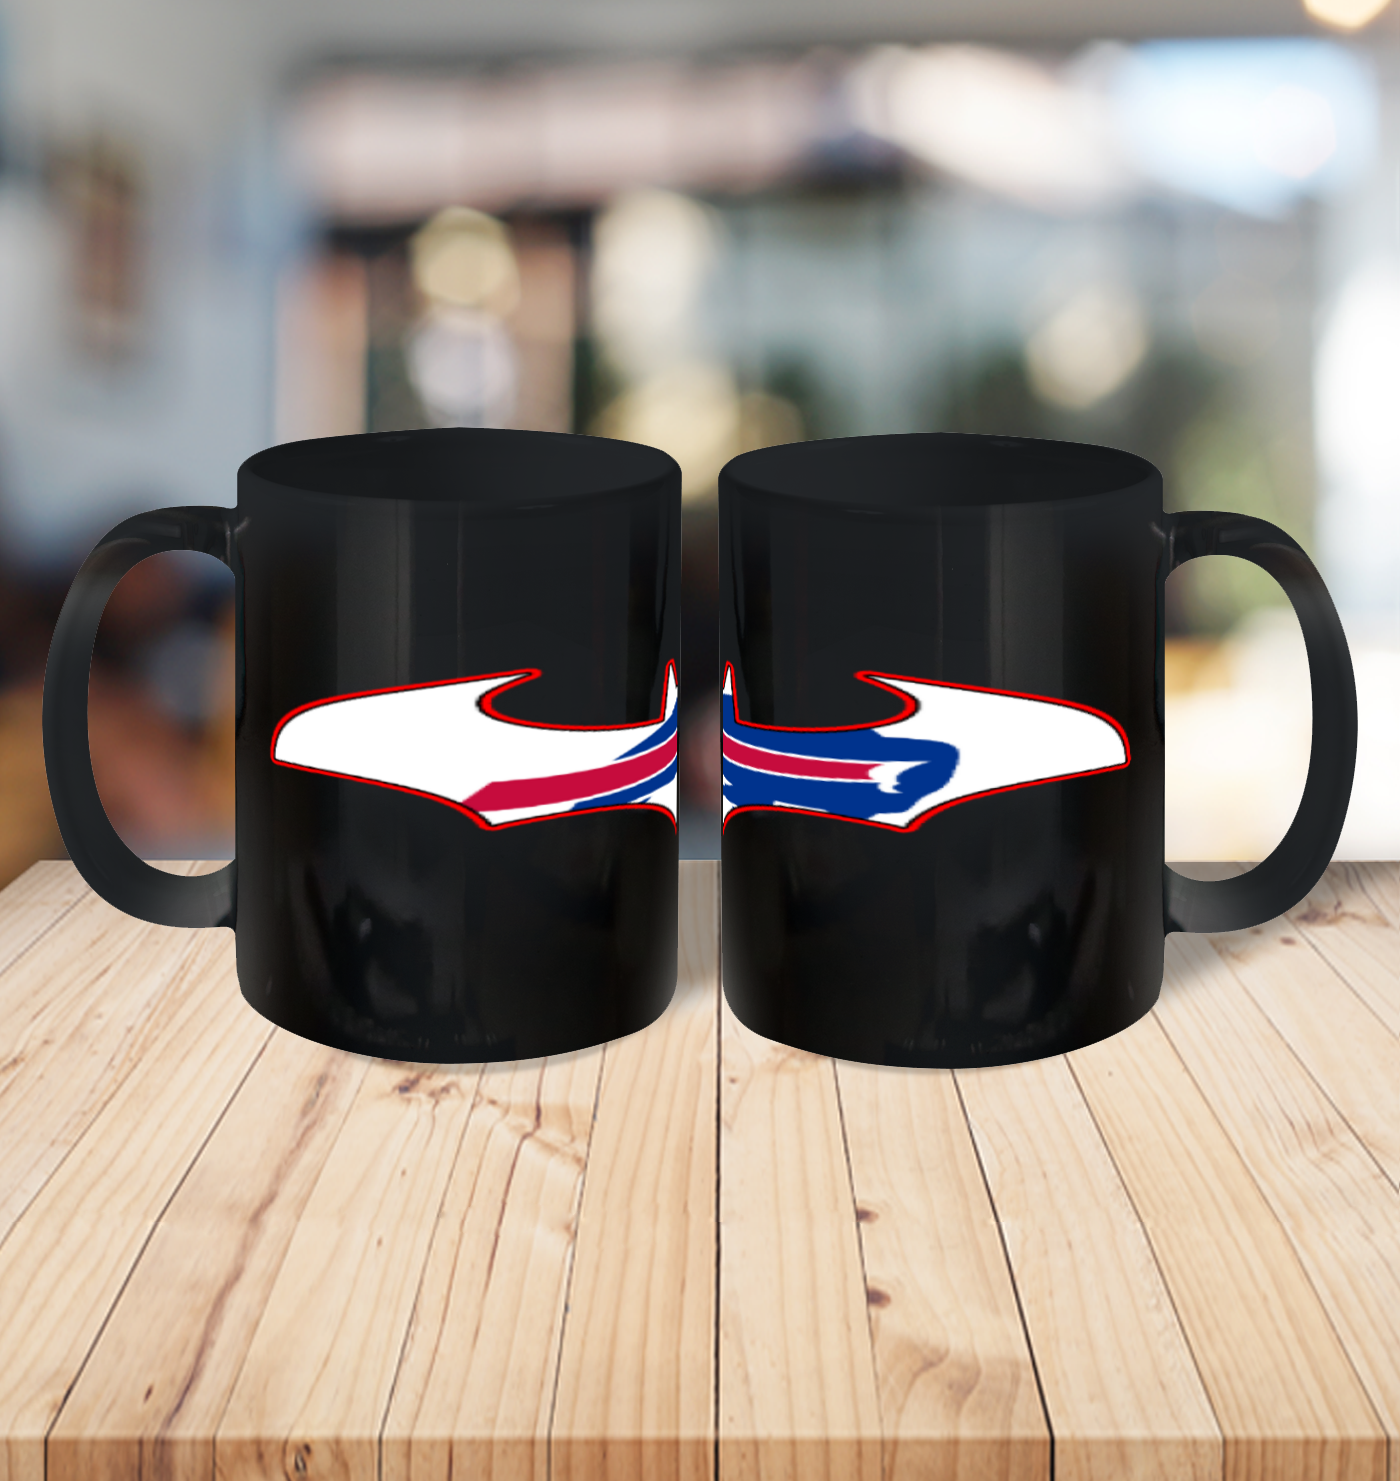 kor8 buffalo bills batman ceramic mug 150 54 both black